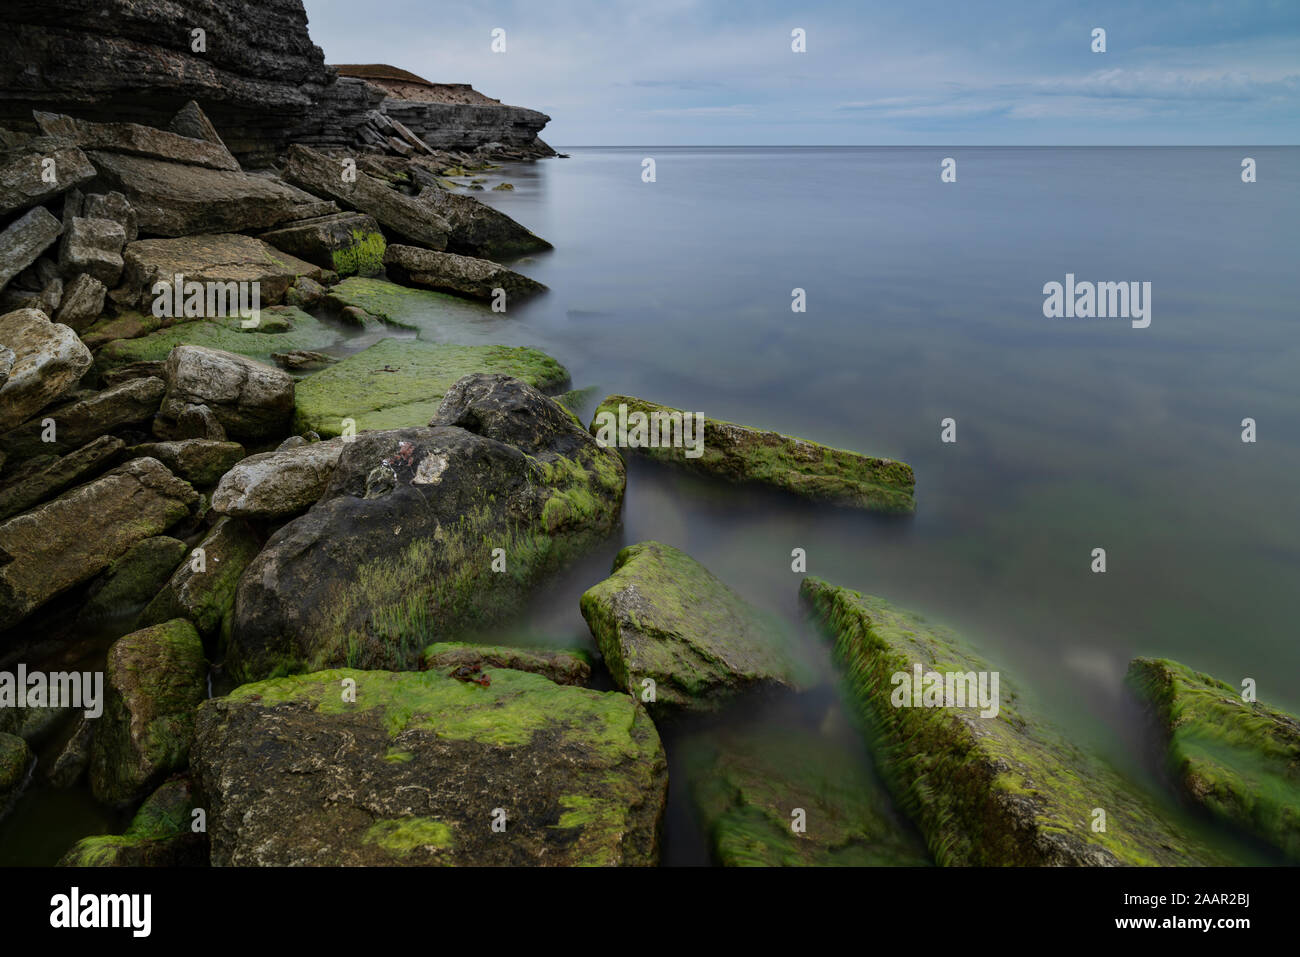 Muro di pietra sul Mar Baltico nell'estate. Costa Osmussaar, isola in Estonia, l'Europa. Foto Stock